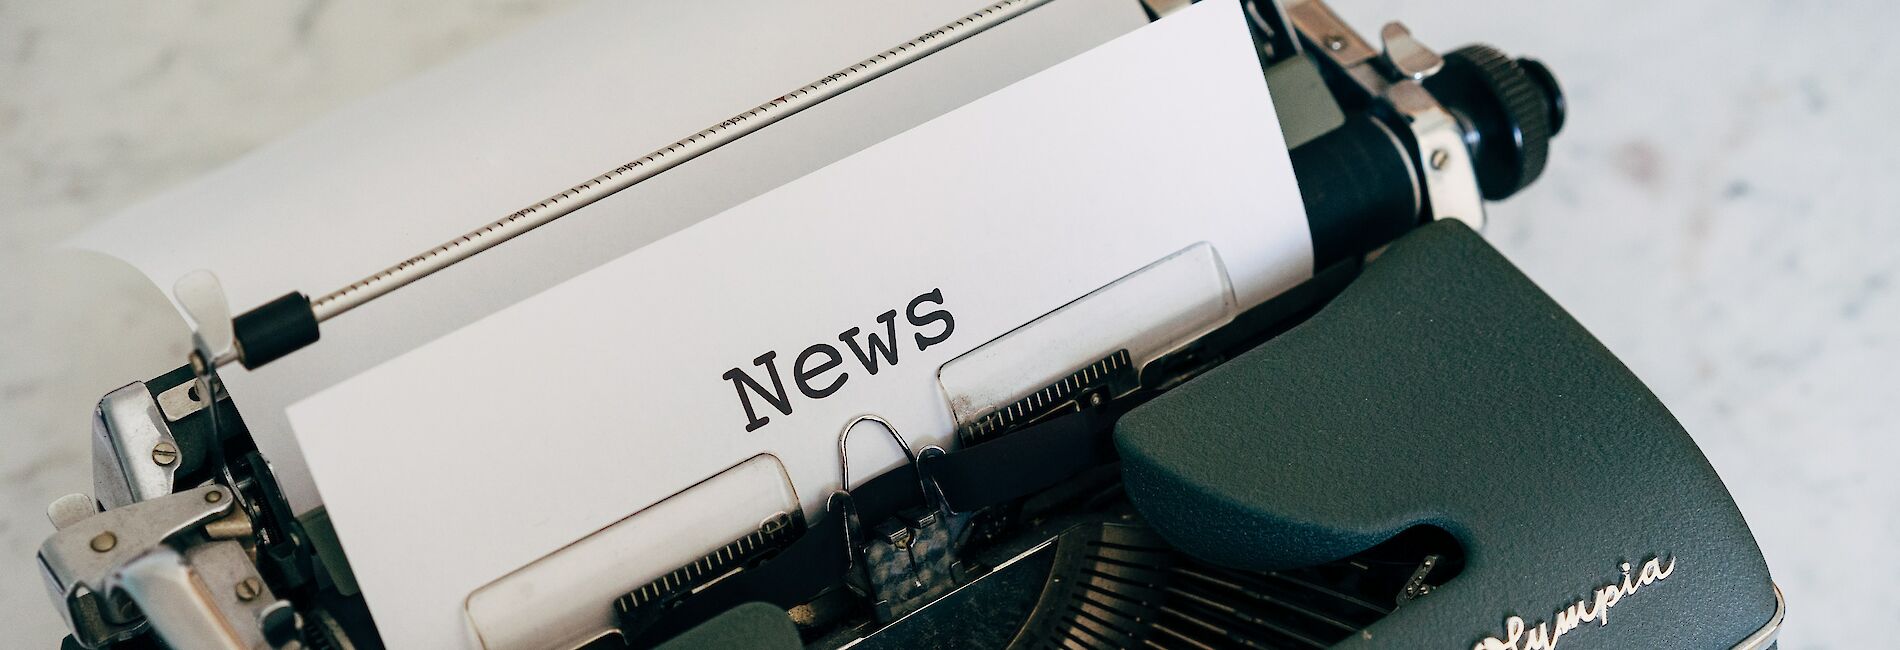 Schreibmaschine der Marke Olympia mit beschriebenem Blatt "News"